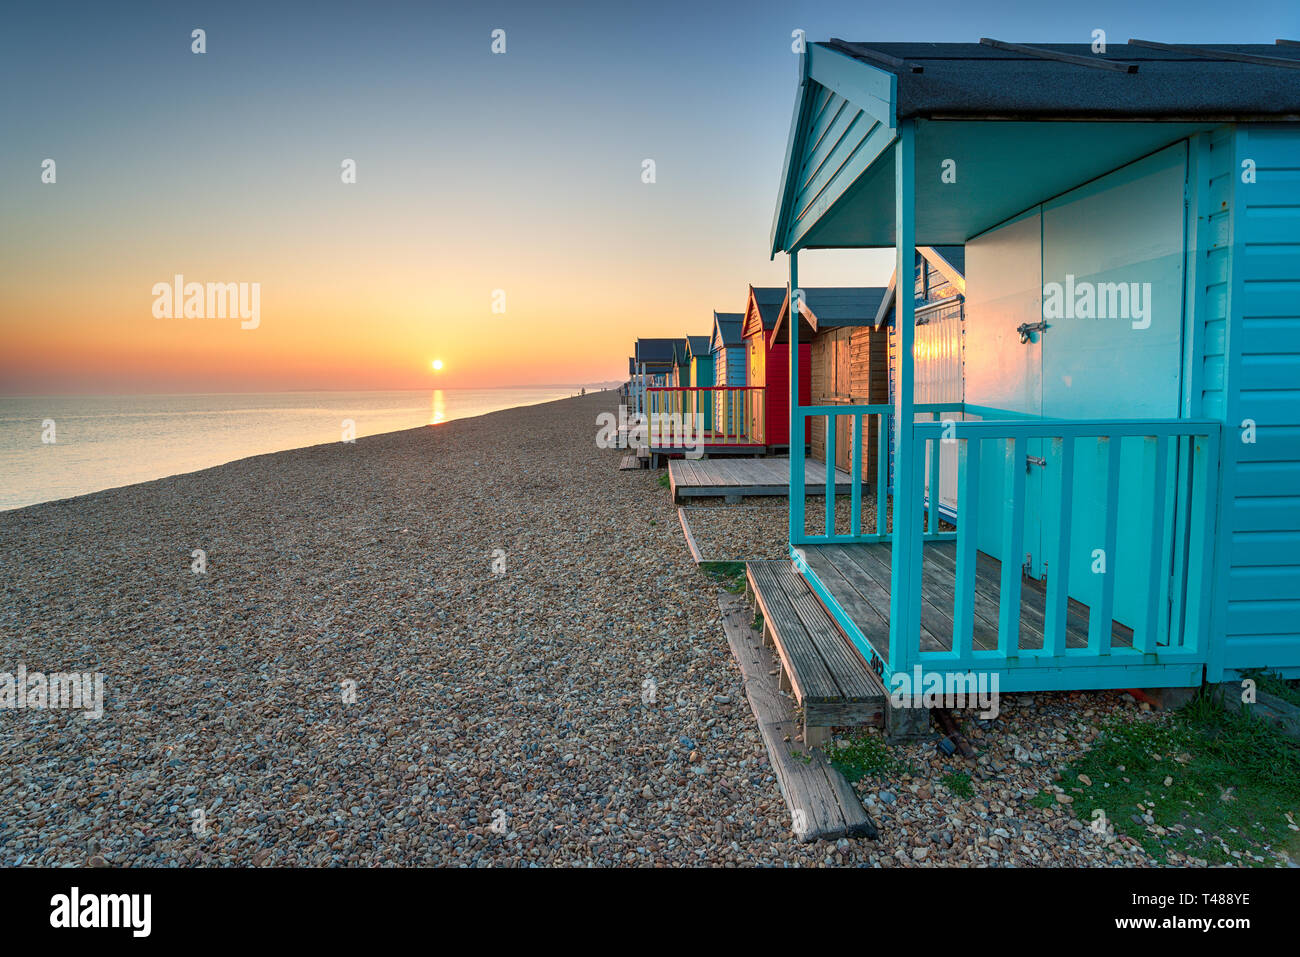 Stunning sunset over seaside beach huts at Milton on Sea on the Hampshire coastline Stock Photo